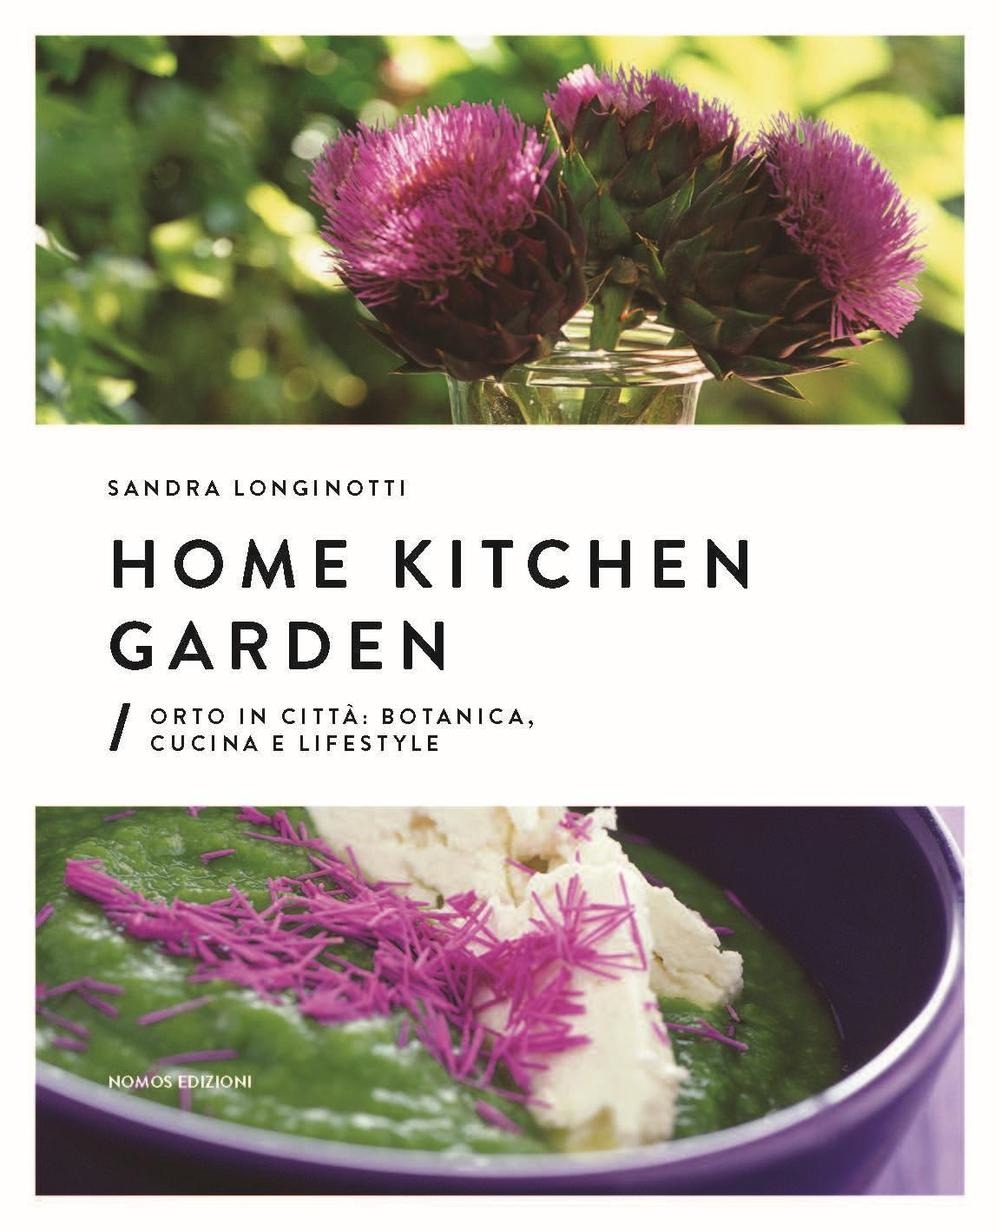 Home Kitchen Garden di Sandra Longinotti - cucina e lifestyle con i fiori